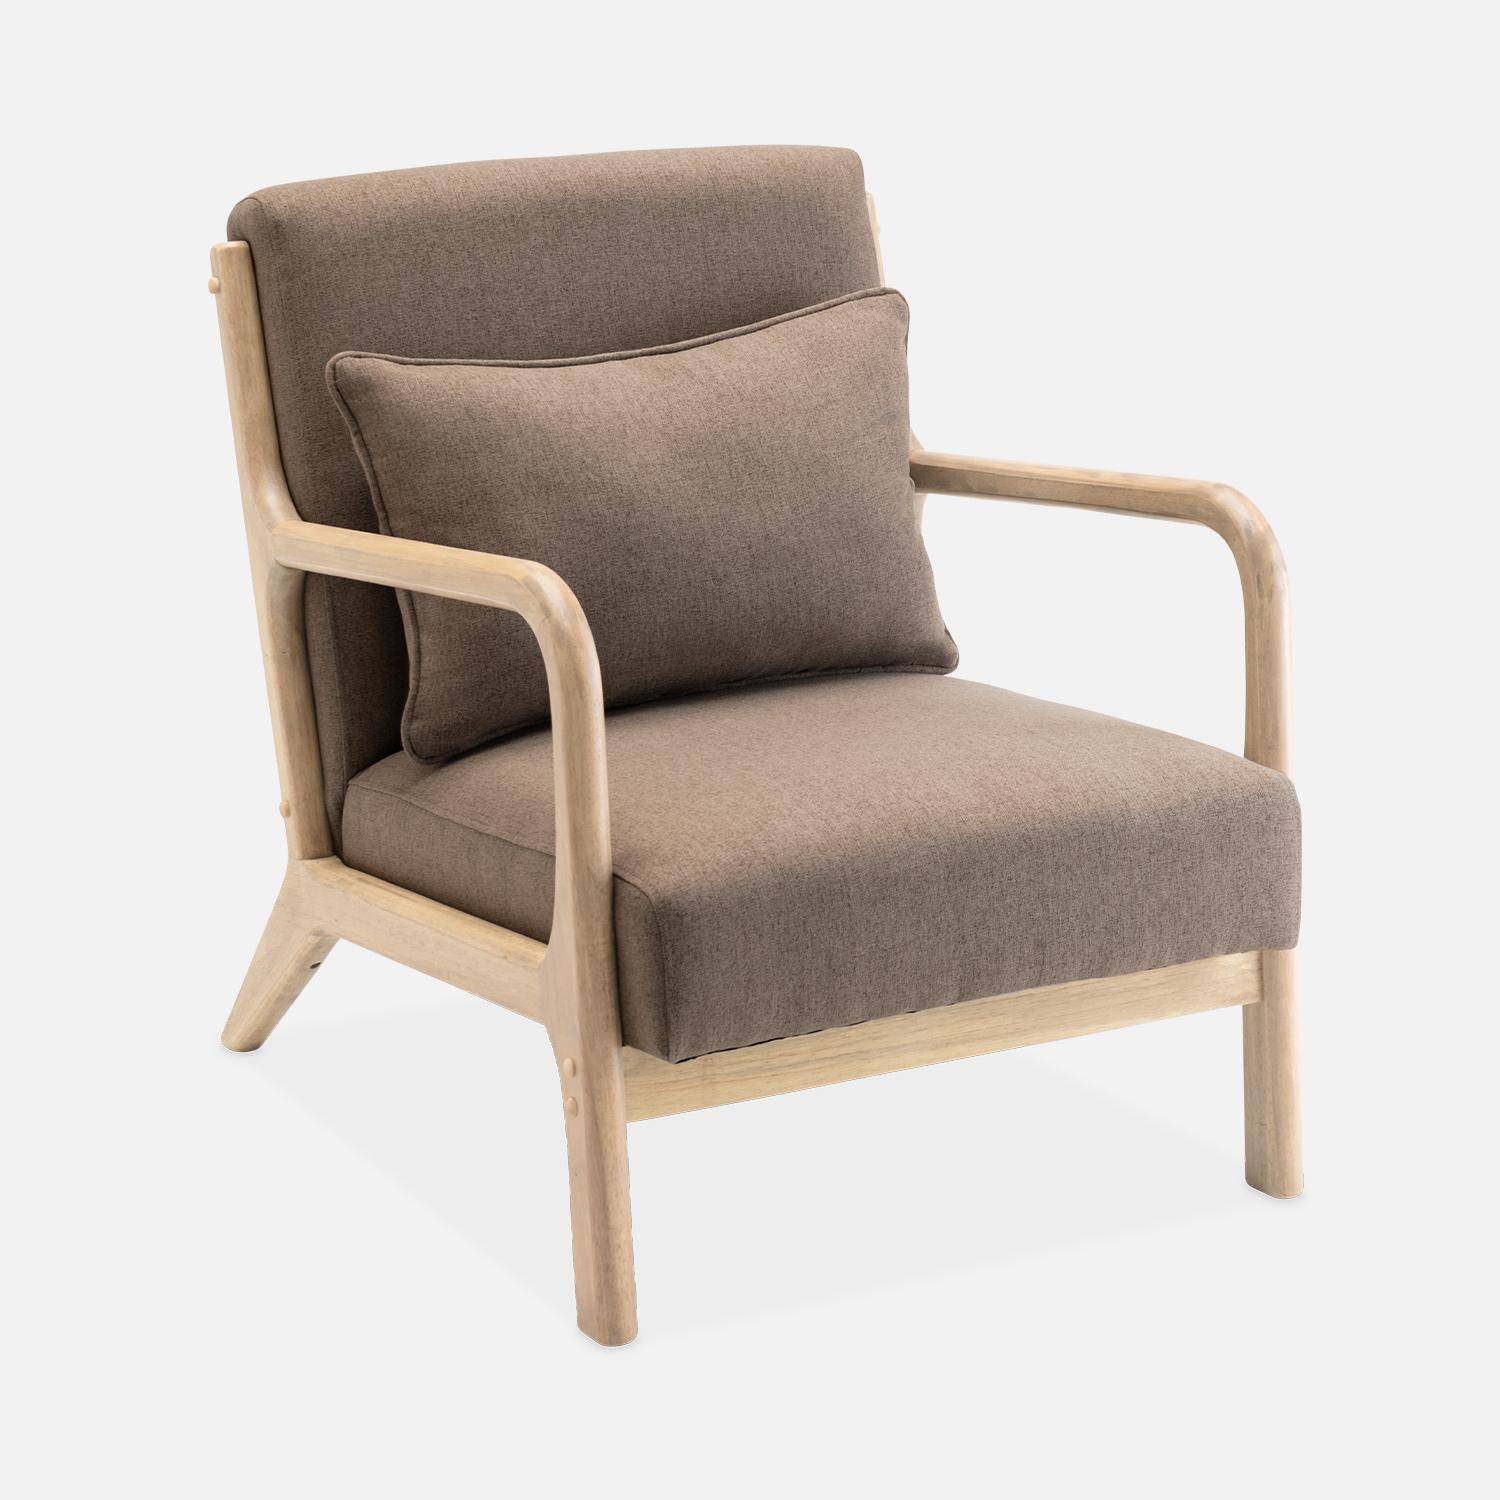 Sillón de diseño marrón en madera y tela, 1 asiento recto fijo, patas de compás escandinavas, armazón de madera maciza, asiento cómodo,sweeek,Photo4